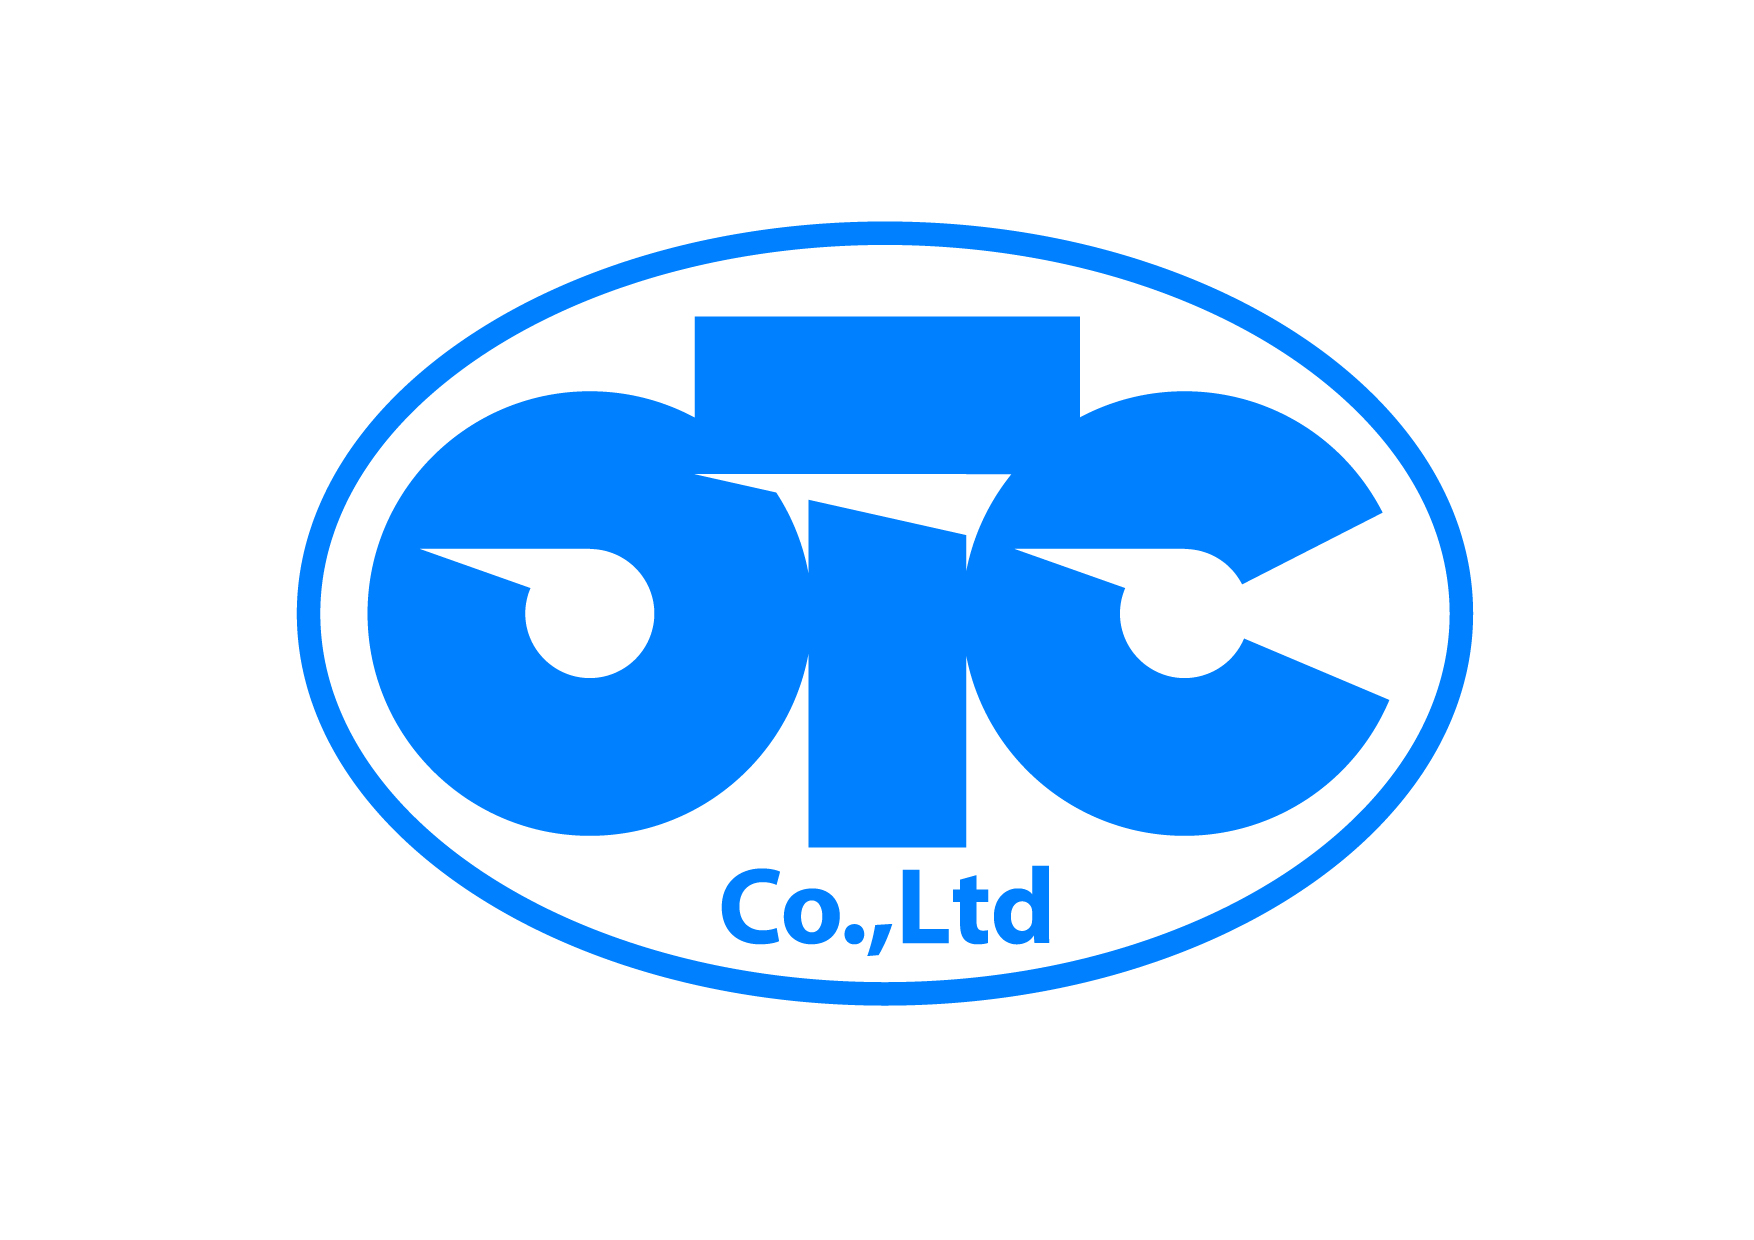 OTC Logo LogoDix